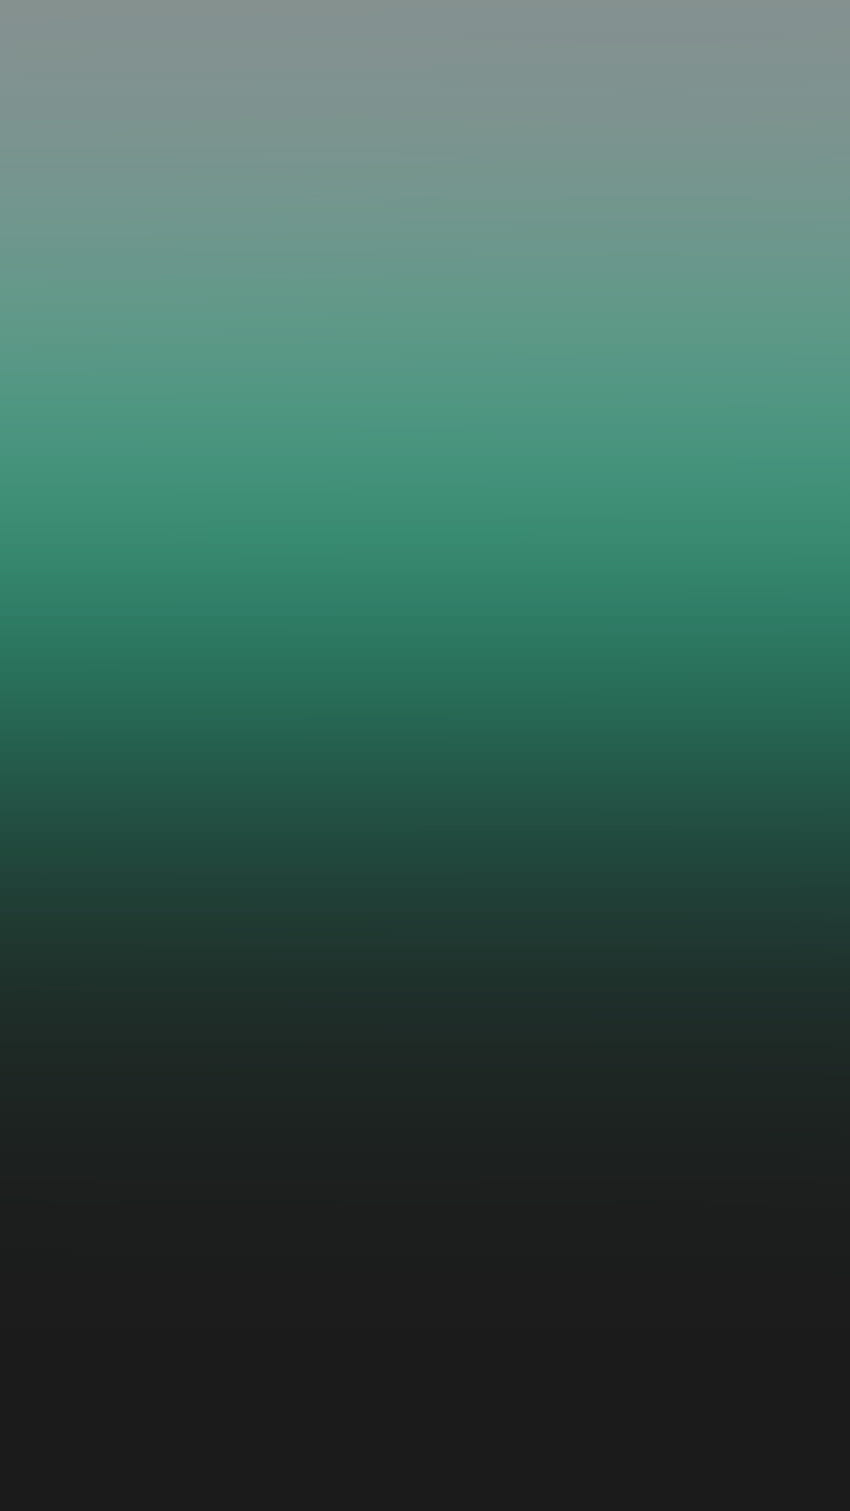 Blue To Green Ombre - Novocom.top, Green Blur HD phone wallpaper ...